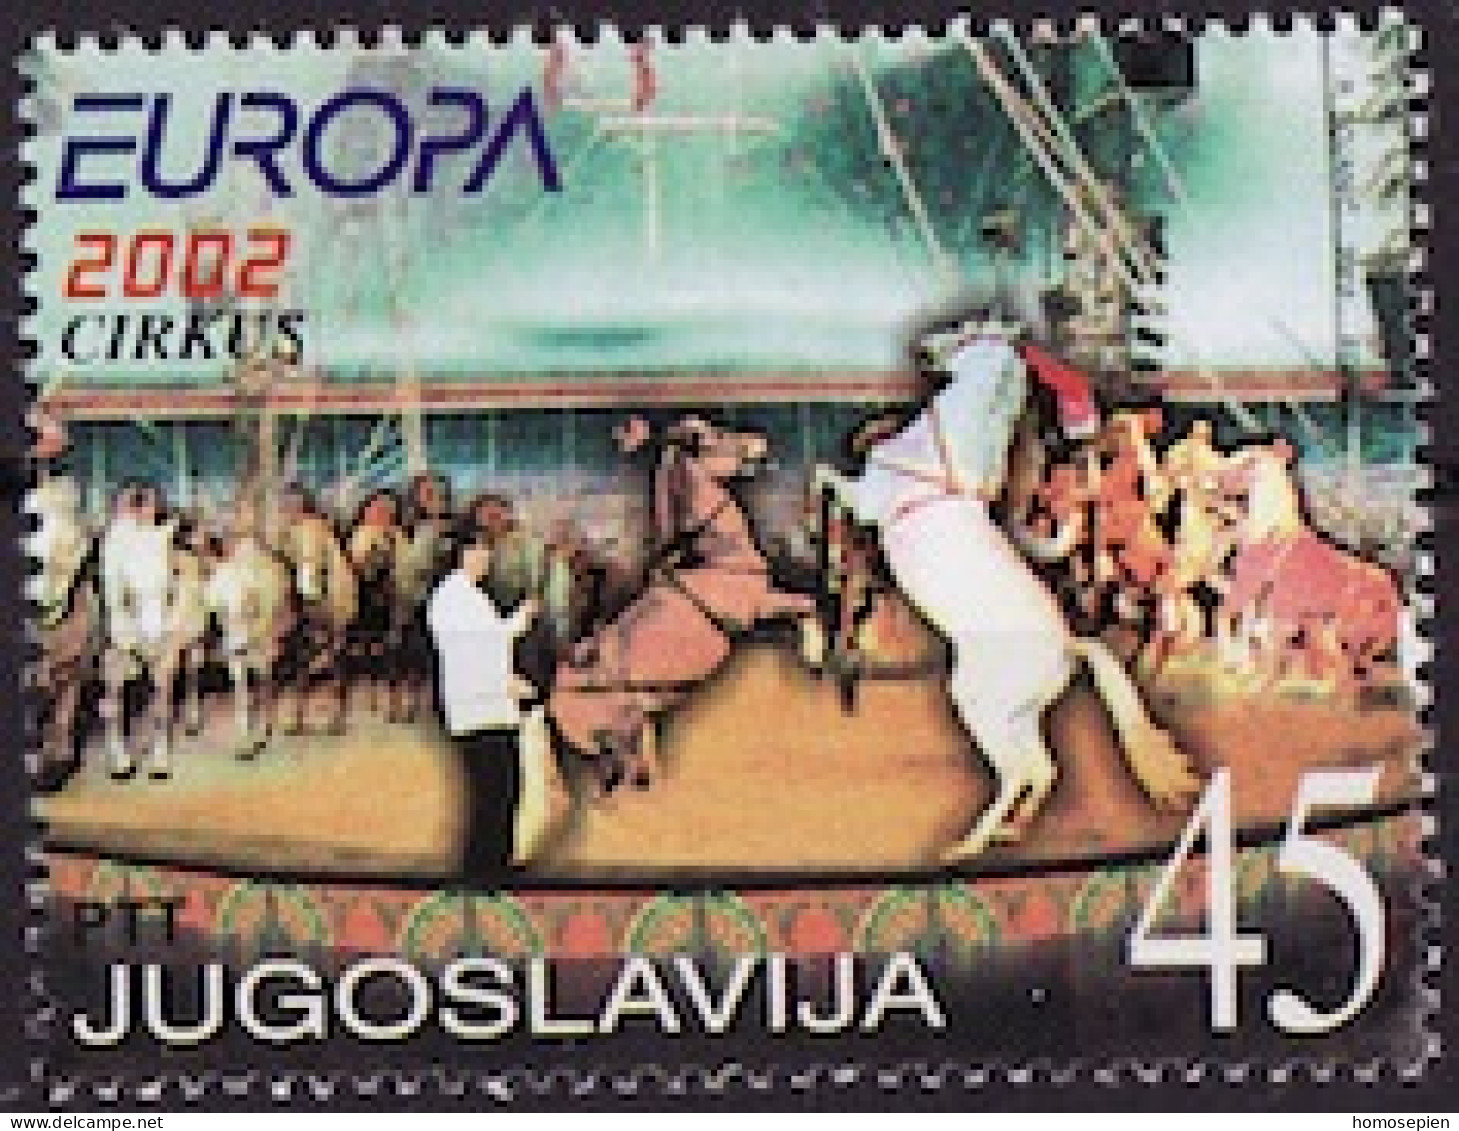 Yougoslavie - Jugoslawien - Yugoslavia 2002 Y&T N°(1) - Michel N°3078 *** - 45d EUROPA - Unused Stamps